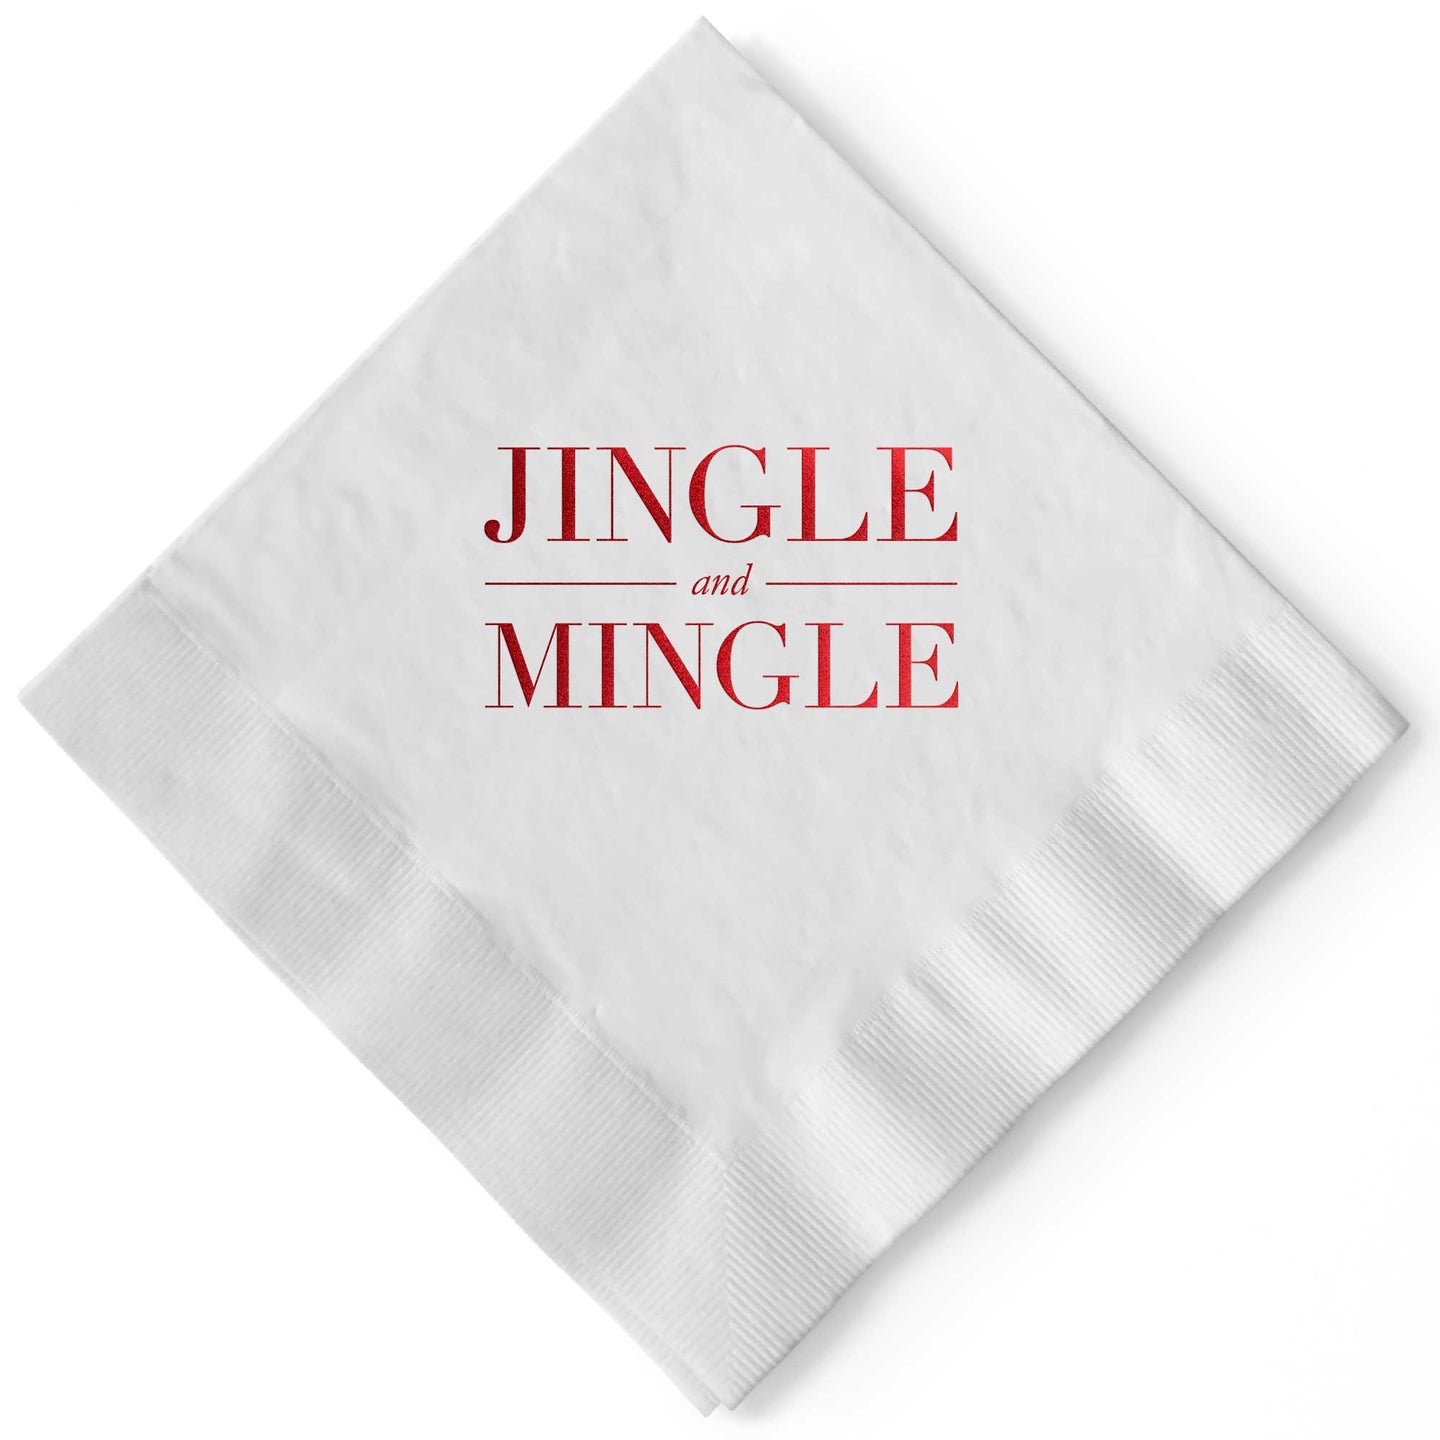 Jingle and Mingle White and Red Cocktail Napkins Christmas